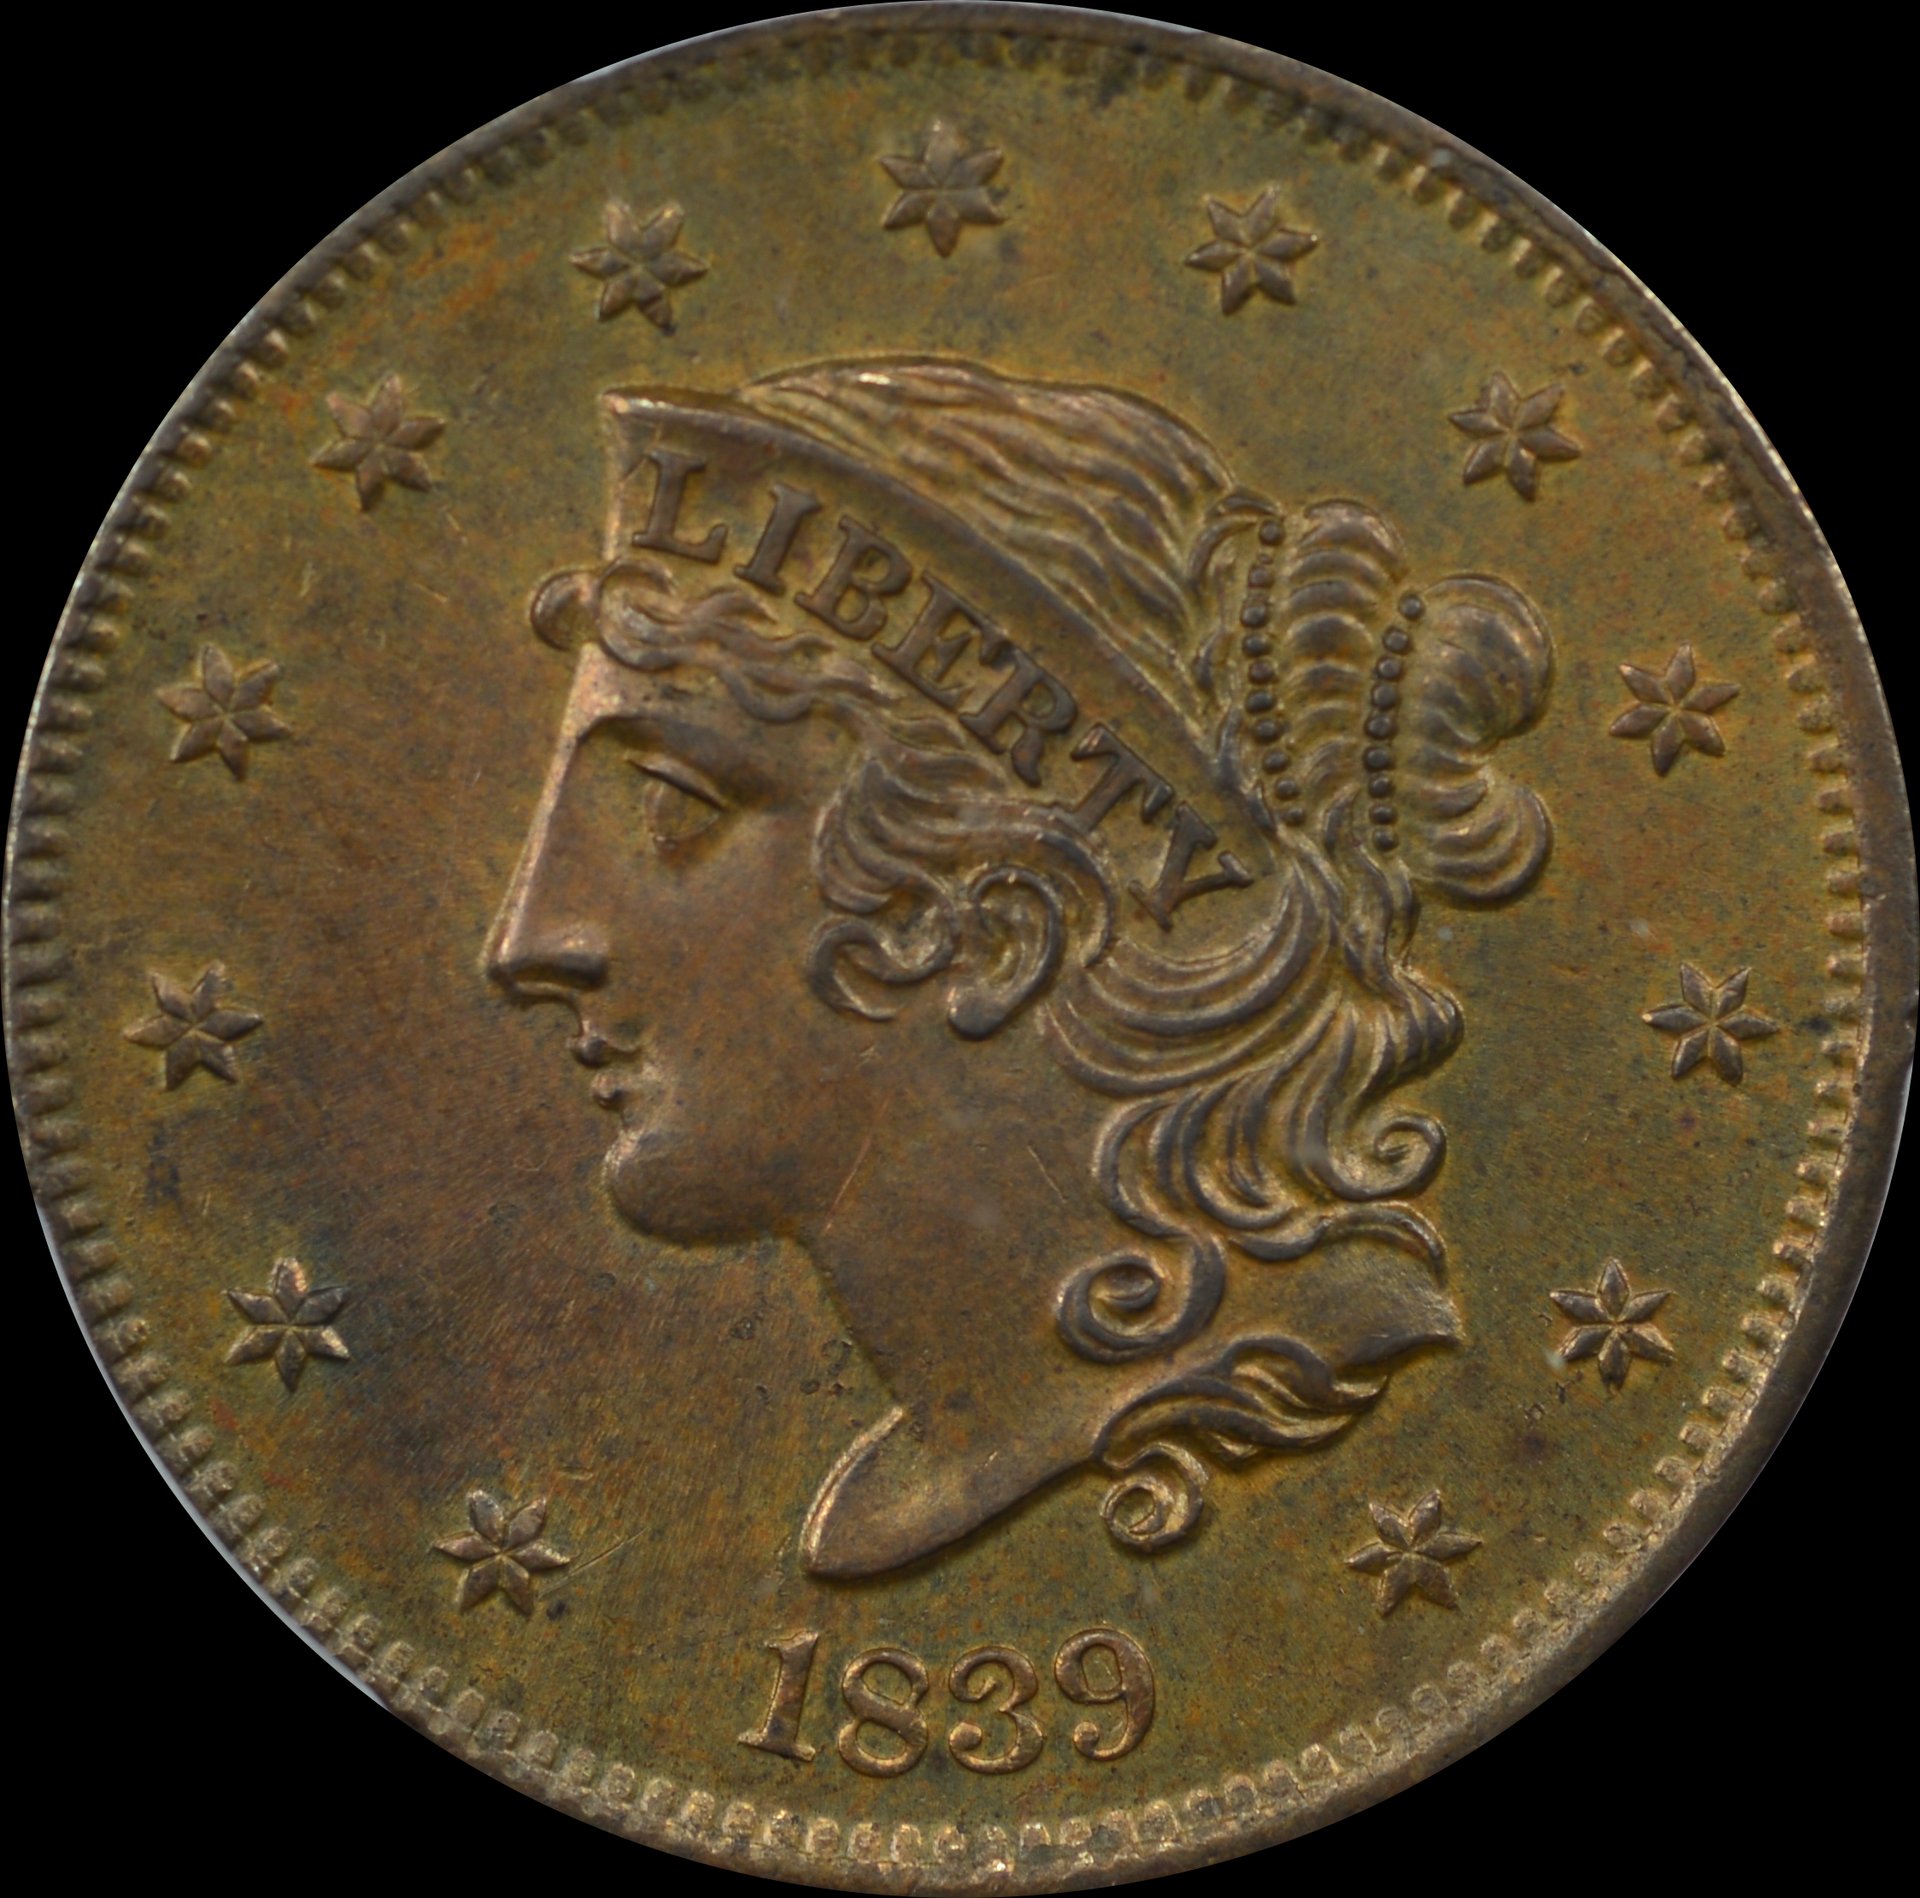 GTG-1839 N-13 Booby Head Large Cent | Coin Talk